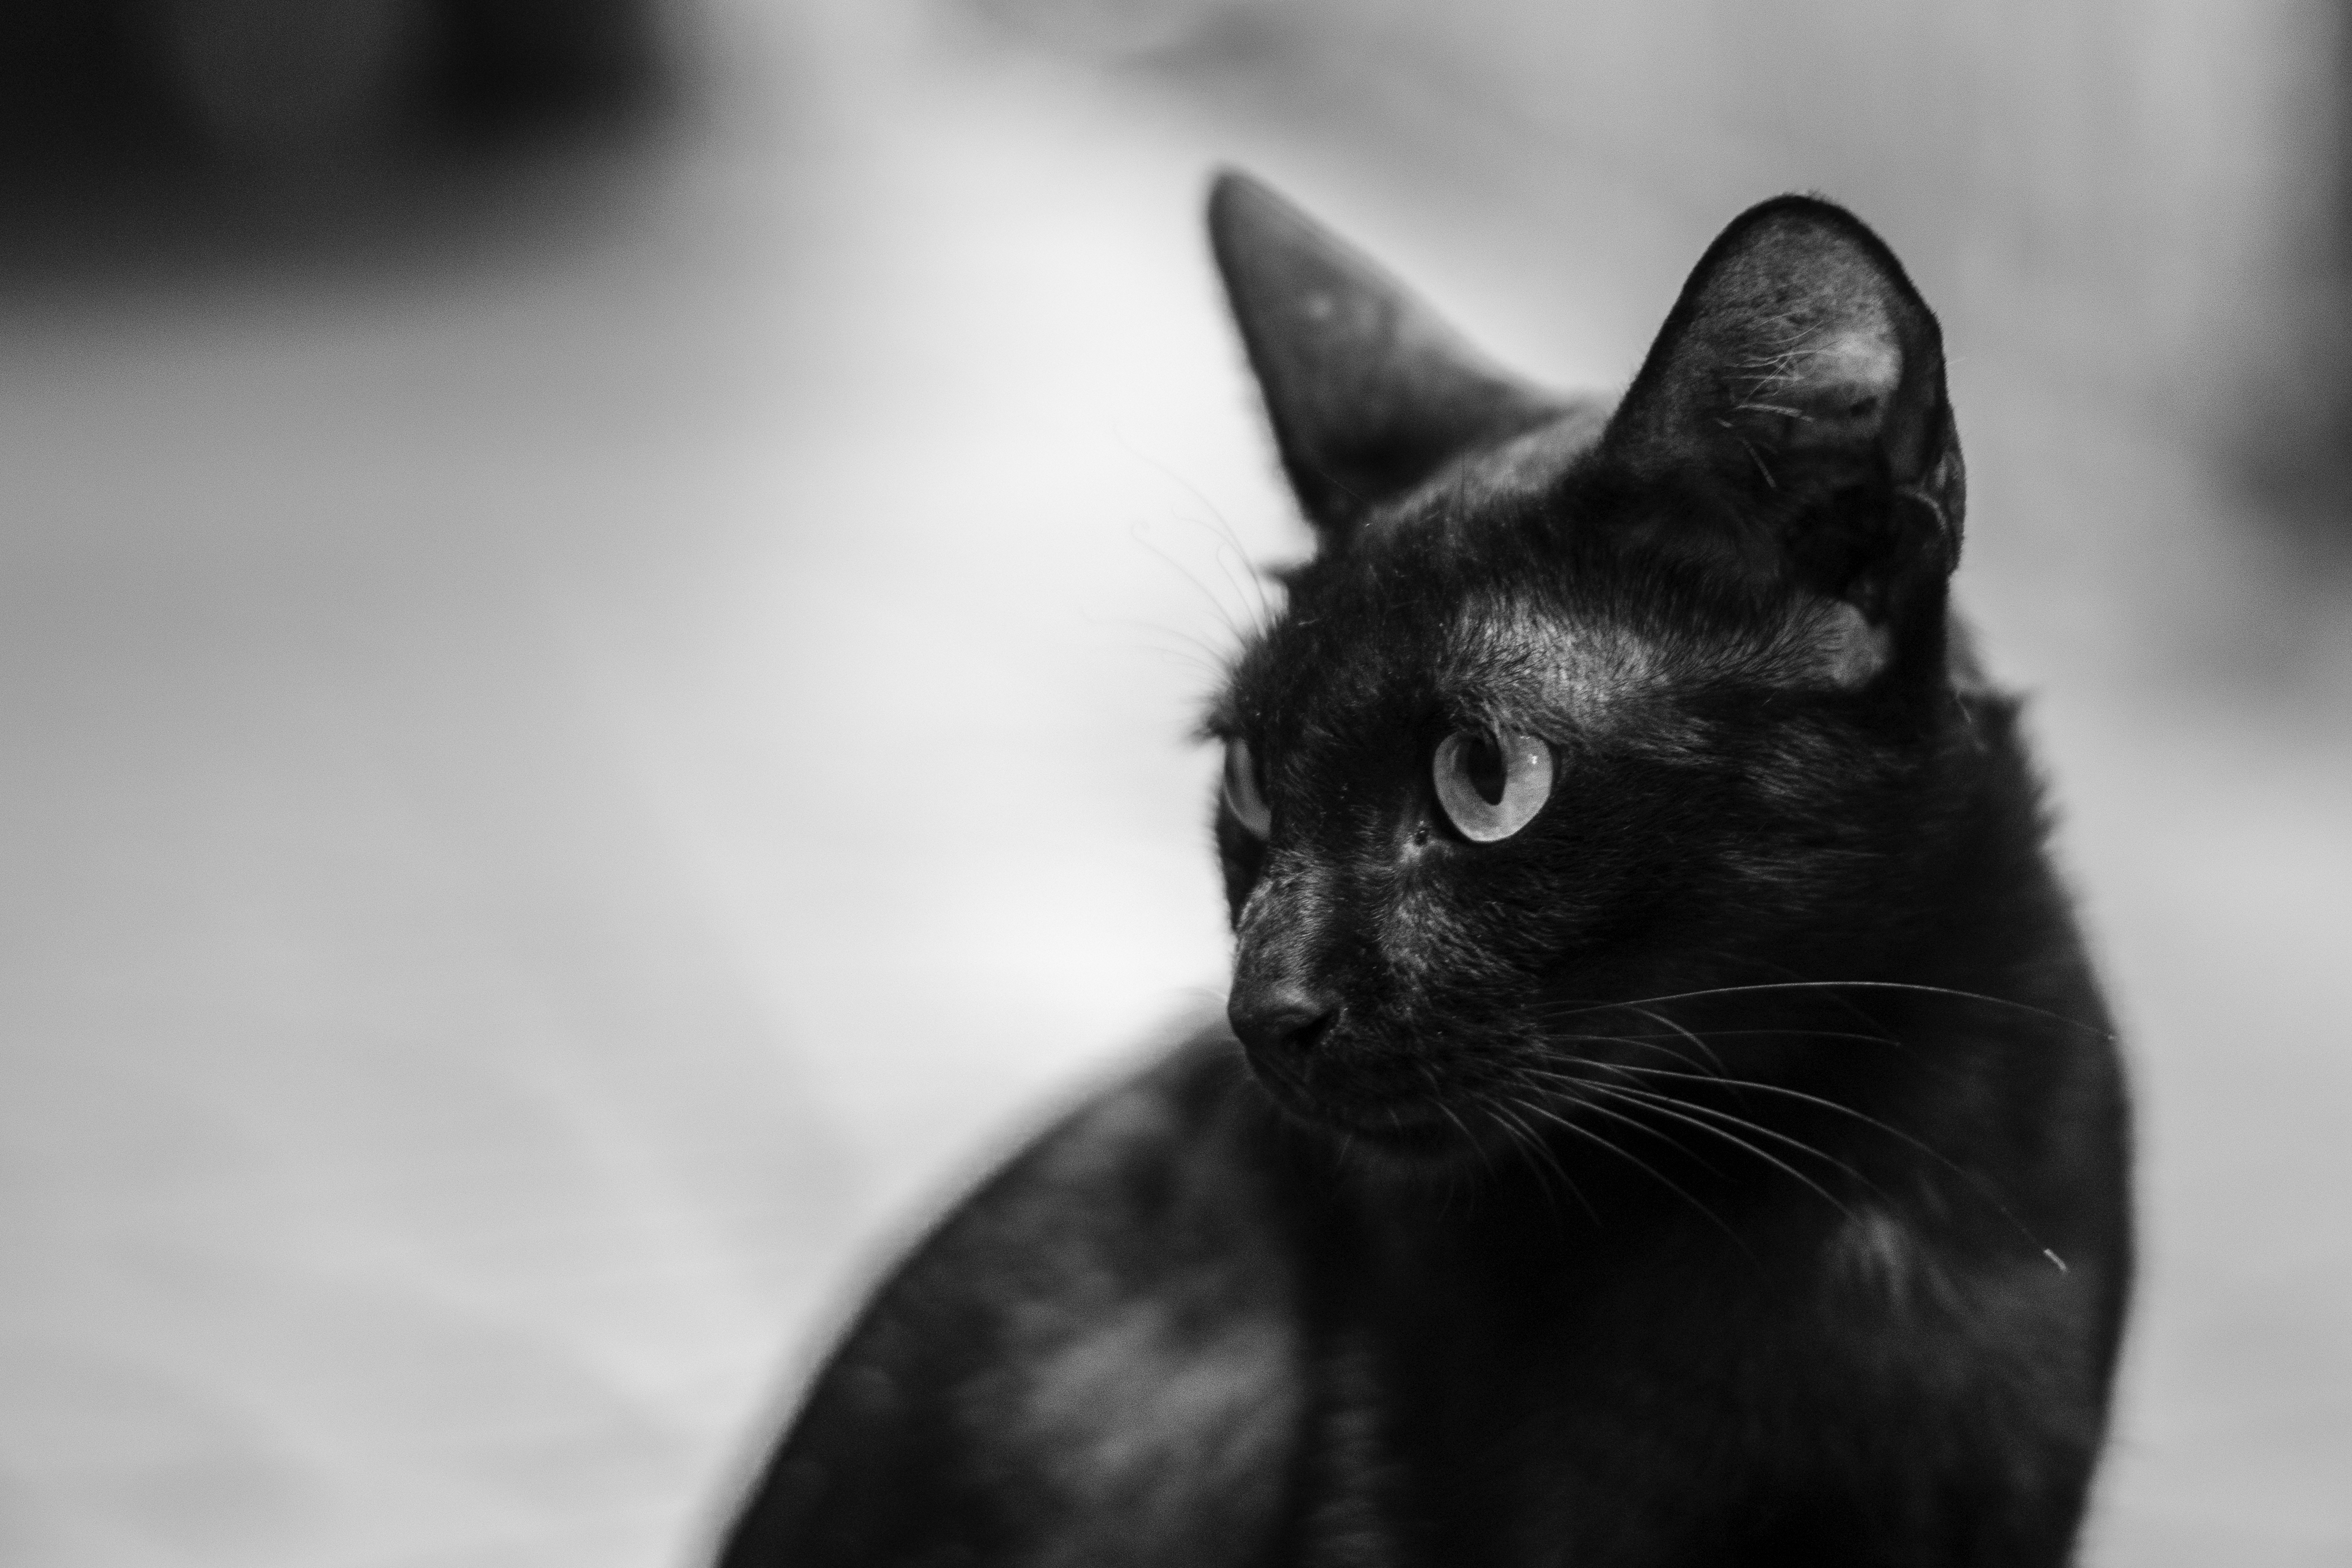  Gatos negros: de la devoción a ser víctimas de brujería